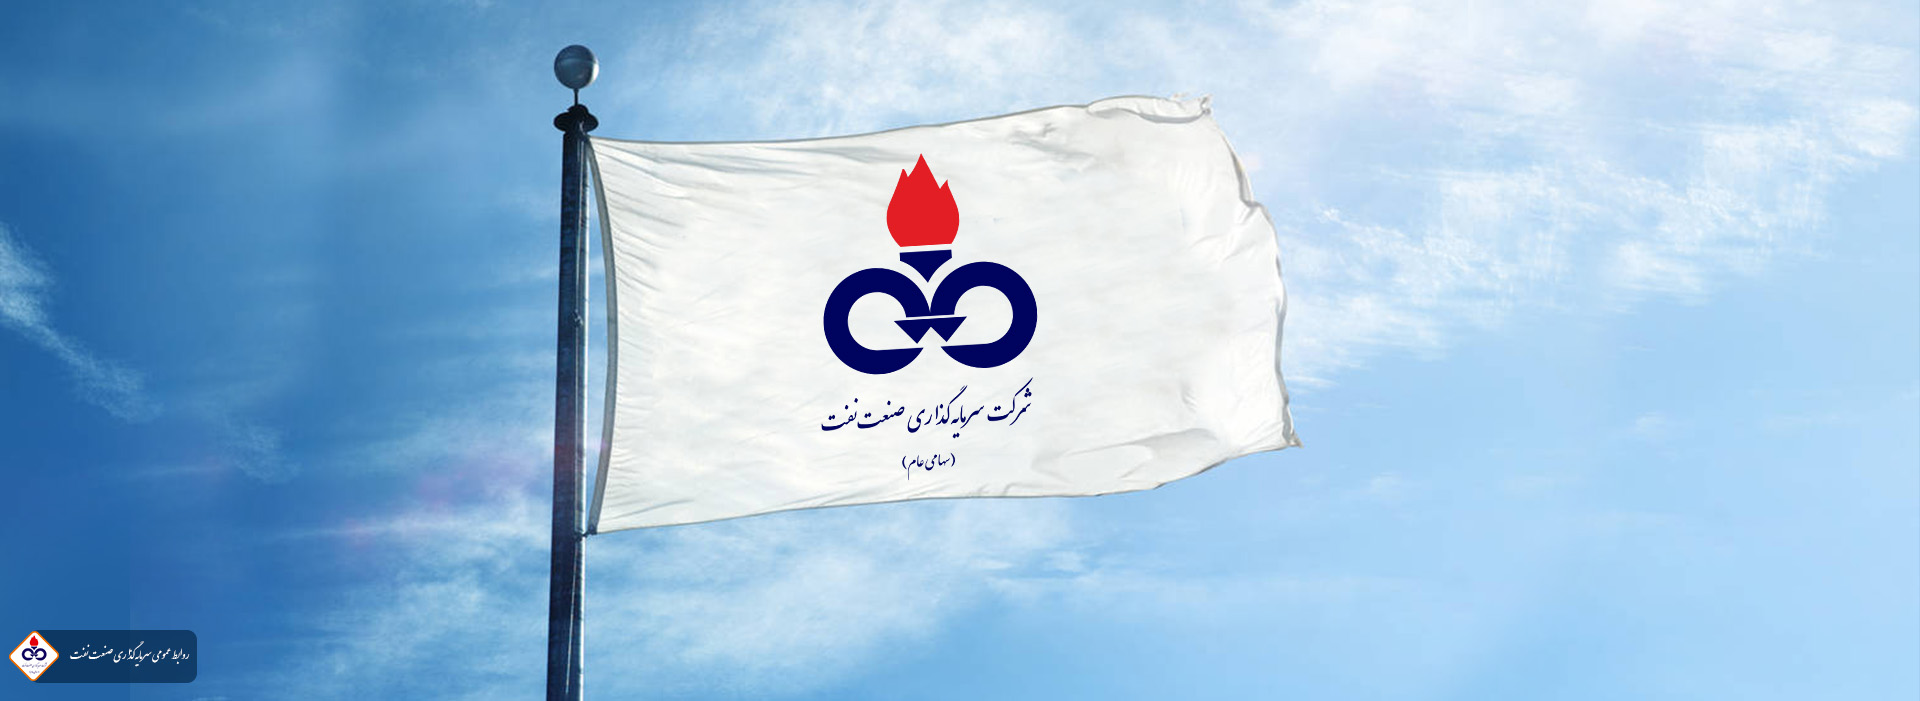 پرچم شرکت سرمایه گذاری صنعت نفت